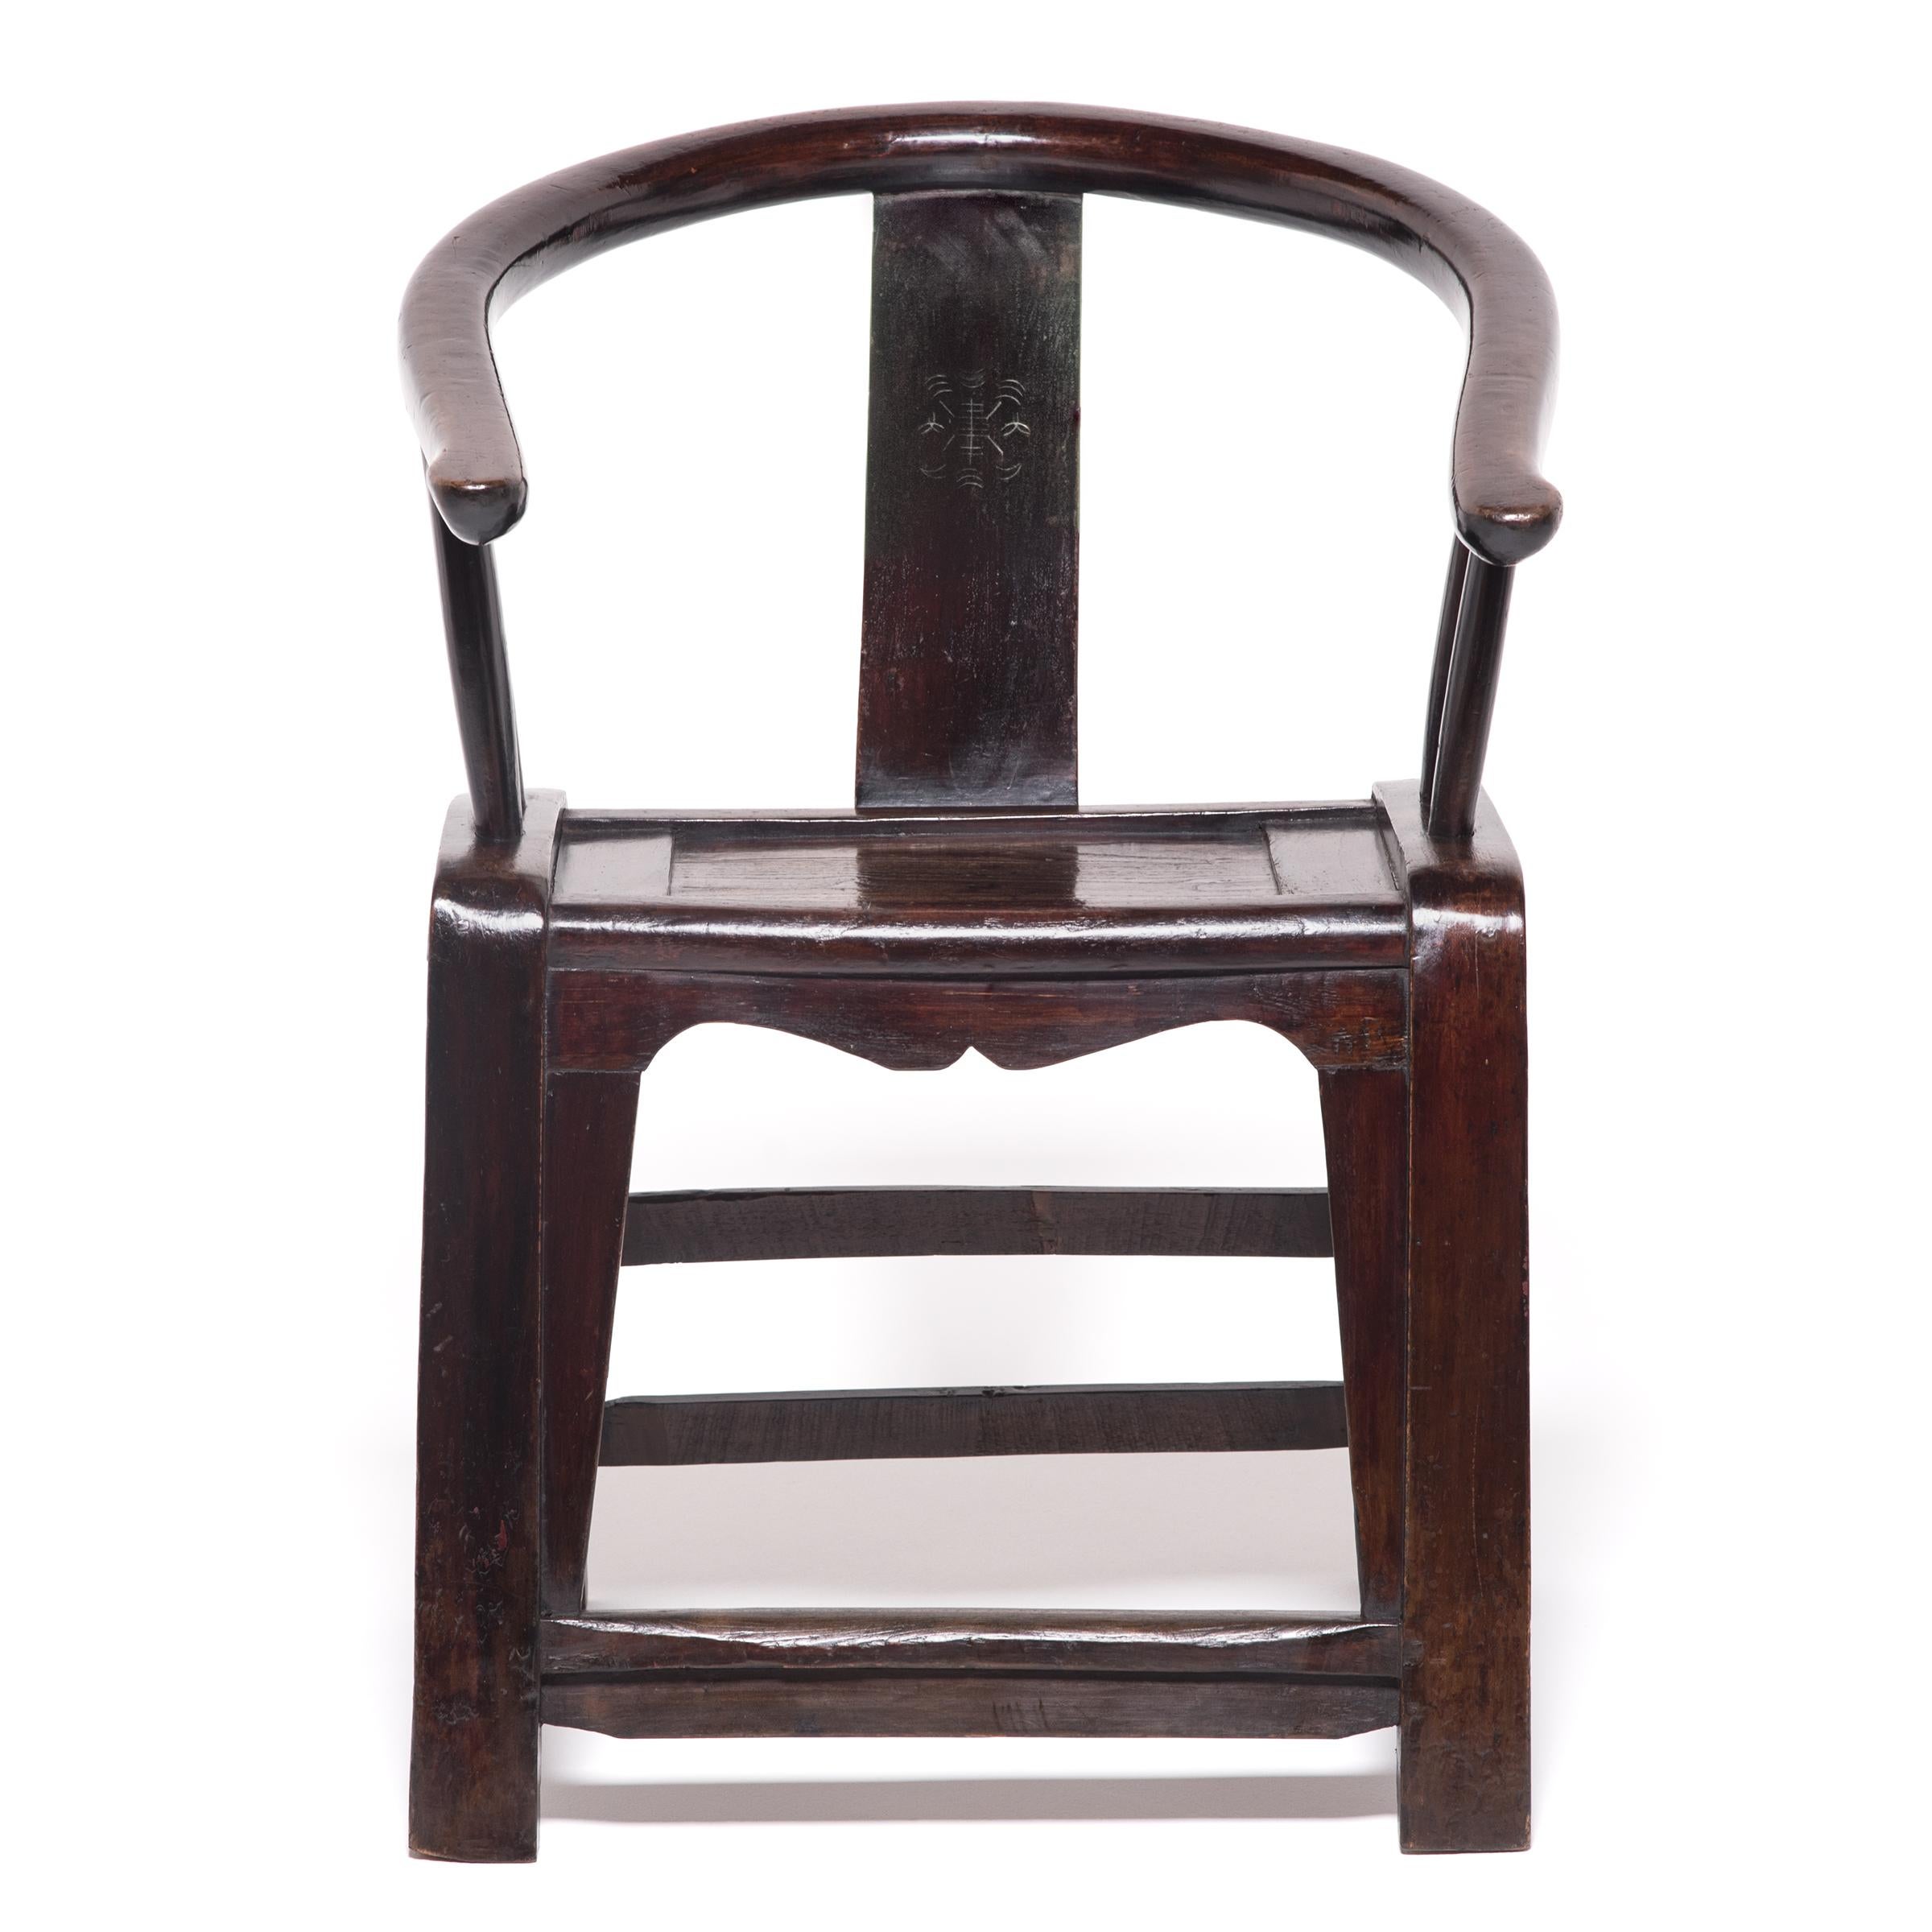 Vor dem 10. Jahrhundert verzichtete die chinesische Gesellschaft auf erhöhte Sitze zugunsten von Matten. Die zunehmende Beliebtheit von Stühlen und anderen Formen erhöhter Sitzgelegenheiten veranlasste Handwerker dazu, traditionelle Schreinerei- und